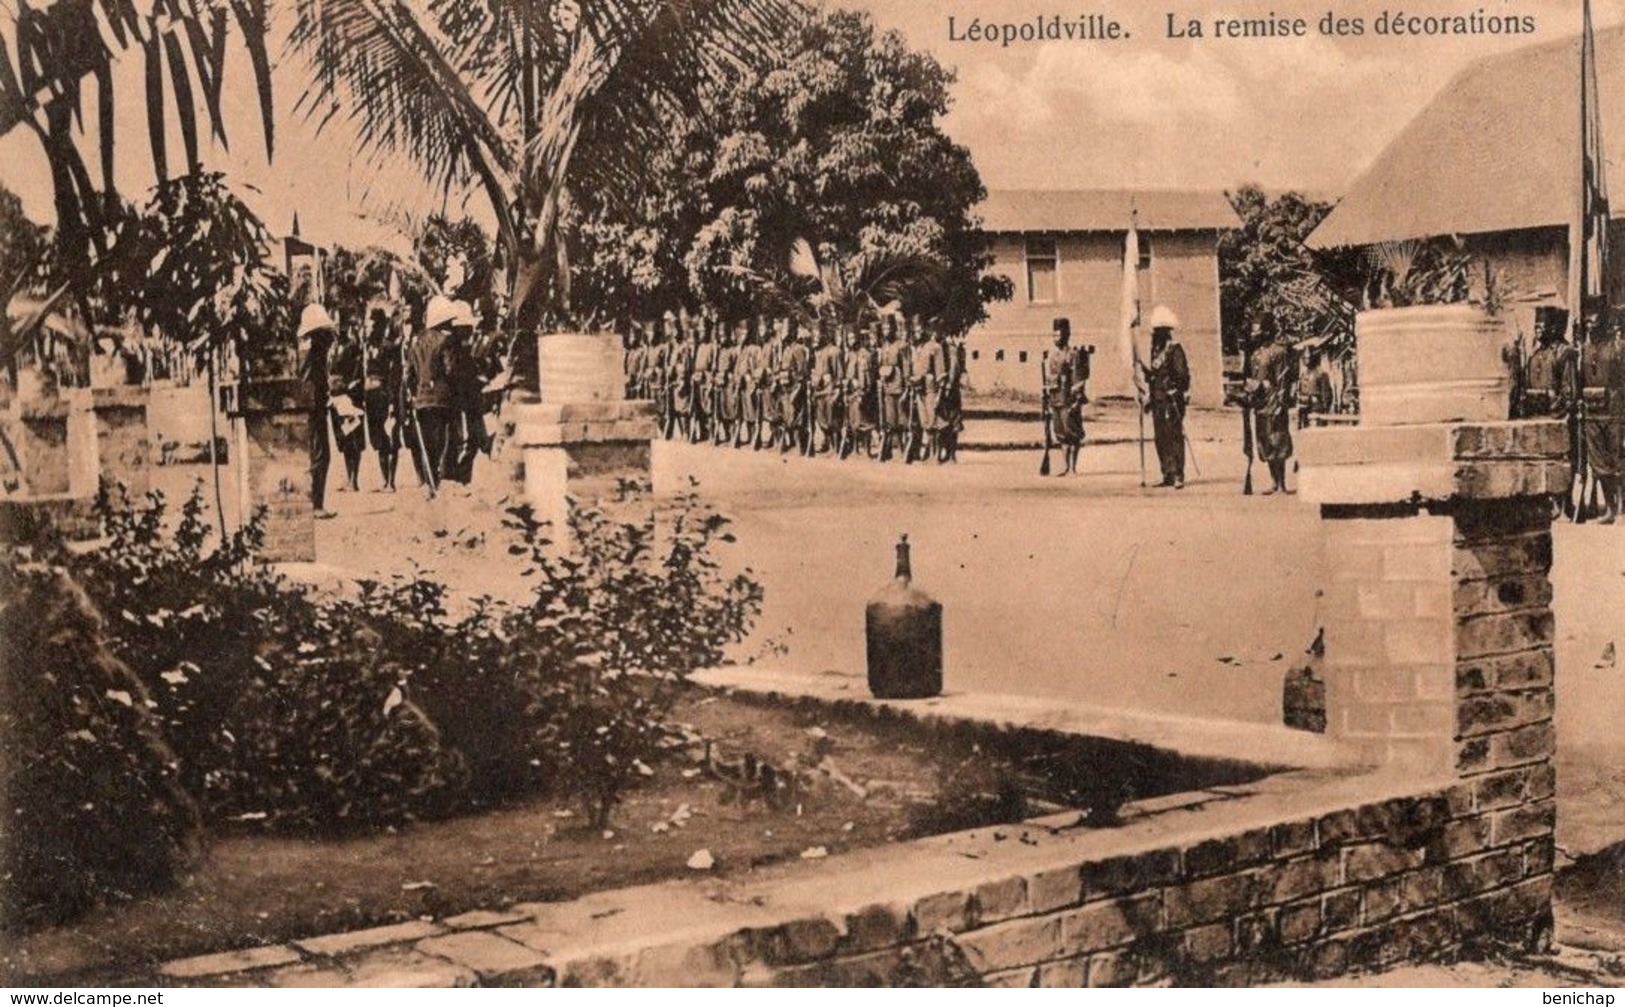 CPA CONGO BELGE - LEOPOLDVILLE - REMISE DES DECORATIONS - SOLDATS CONGOLAIS - NEUVE - NON CIRCULEE. - Kinshasa - Léopoldville